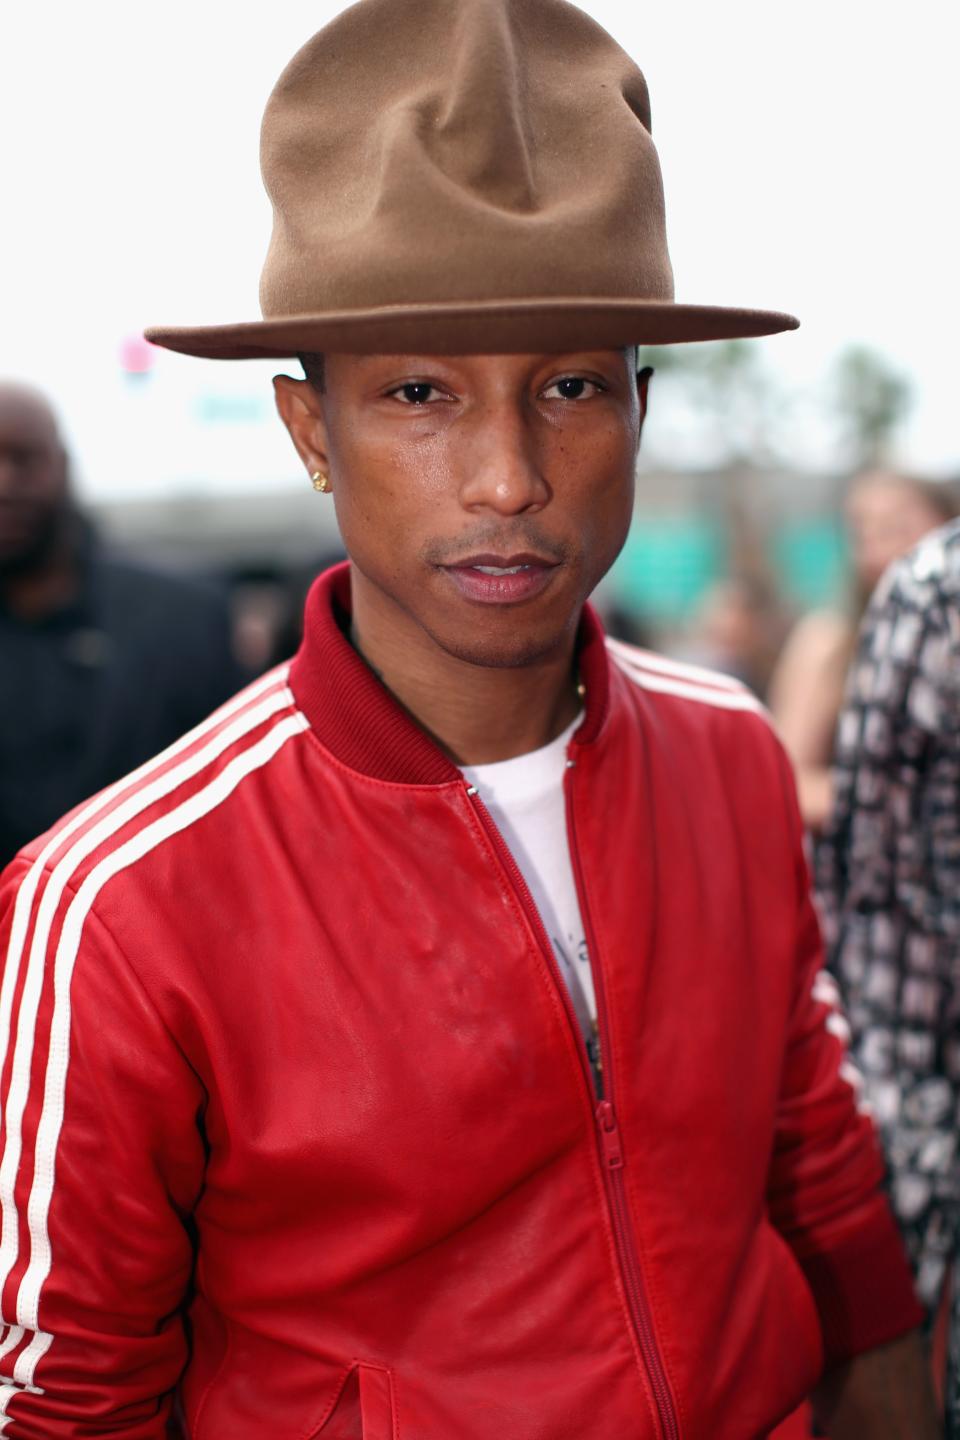 2014: Pharrell